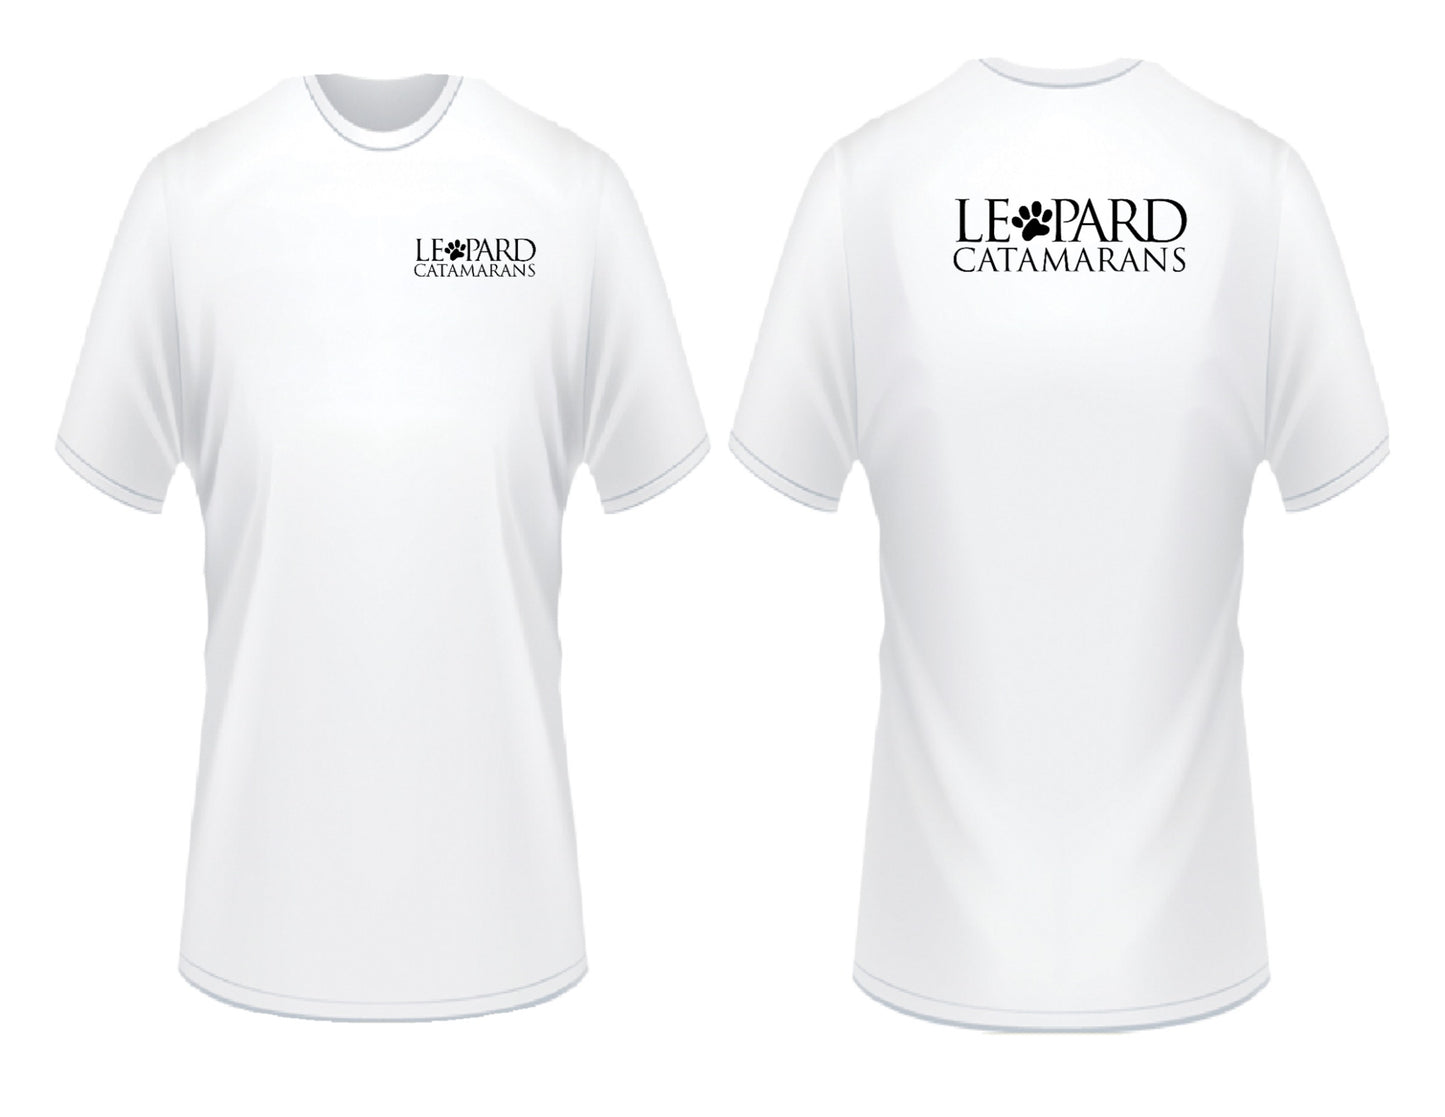 Leopard Catamarans T-Shirt